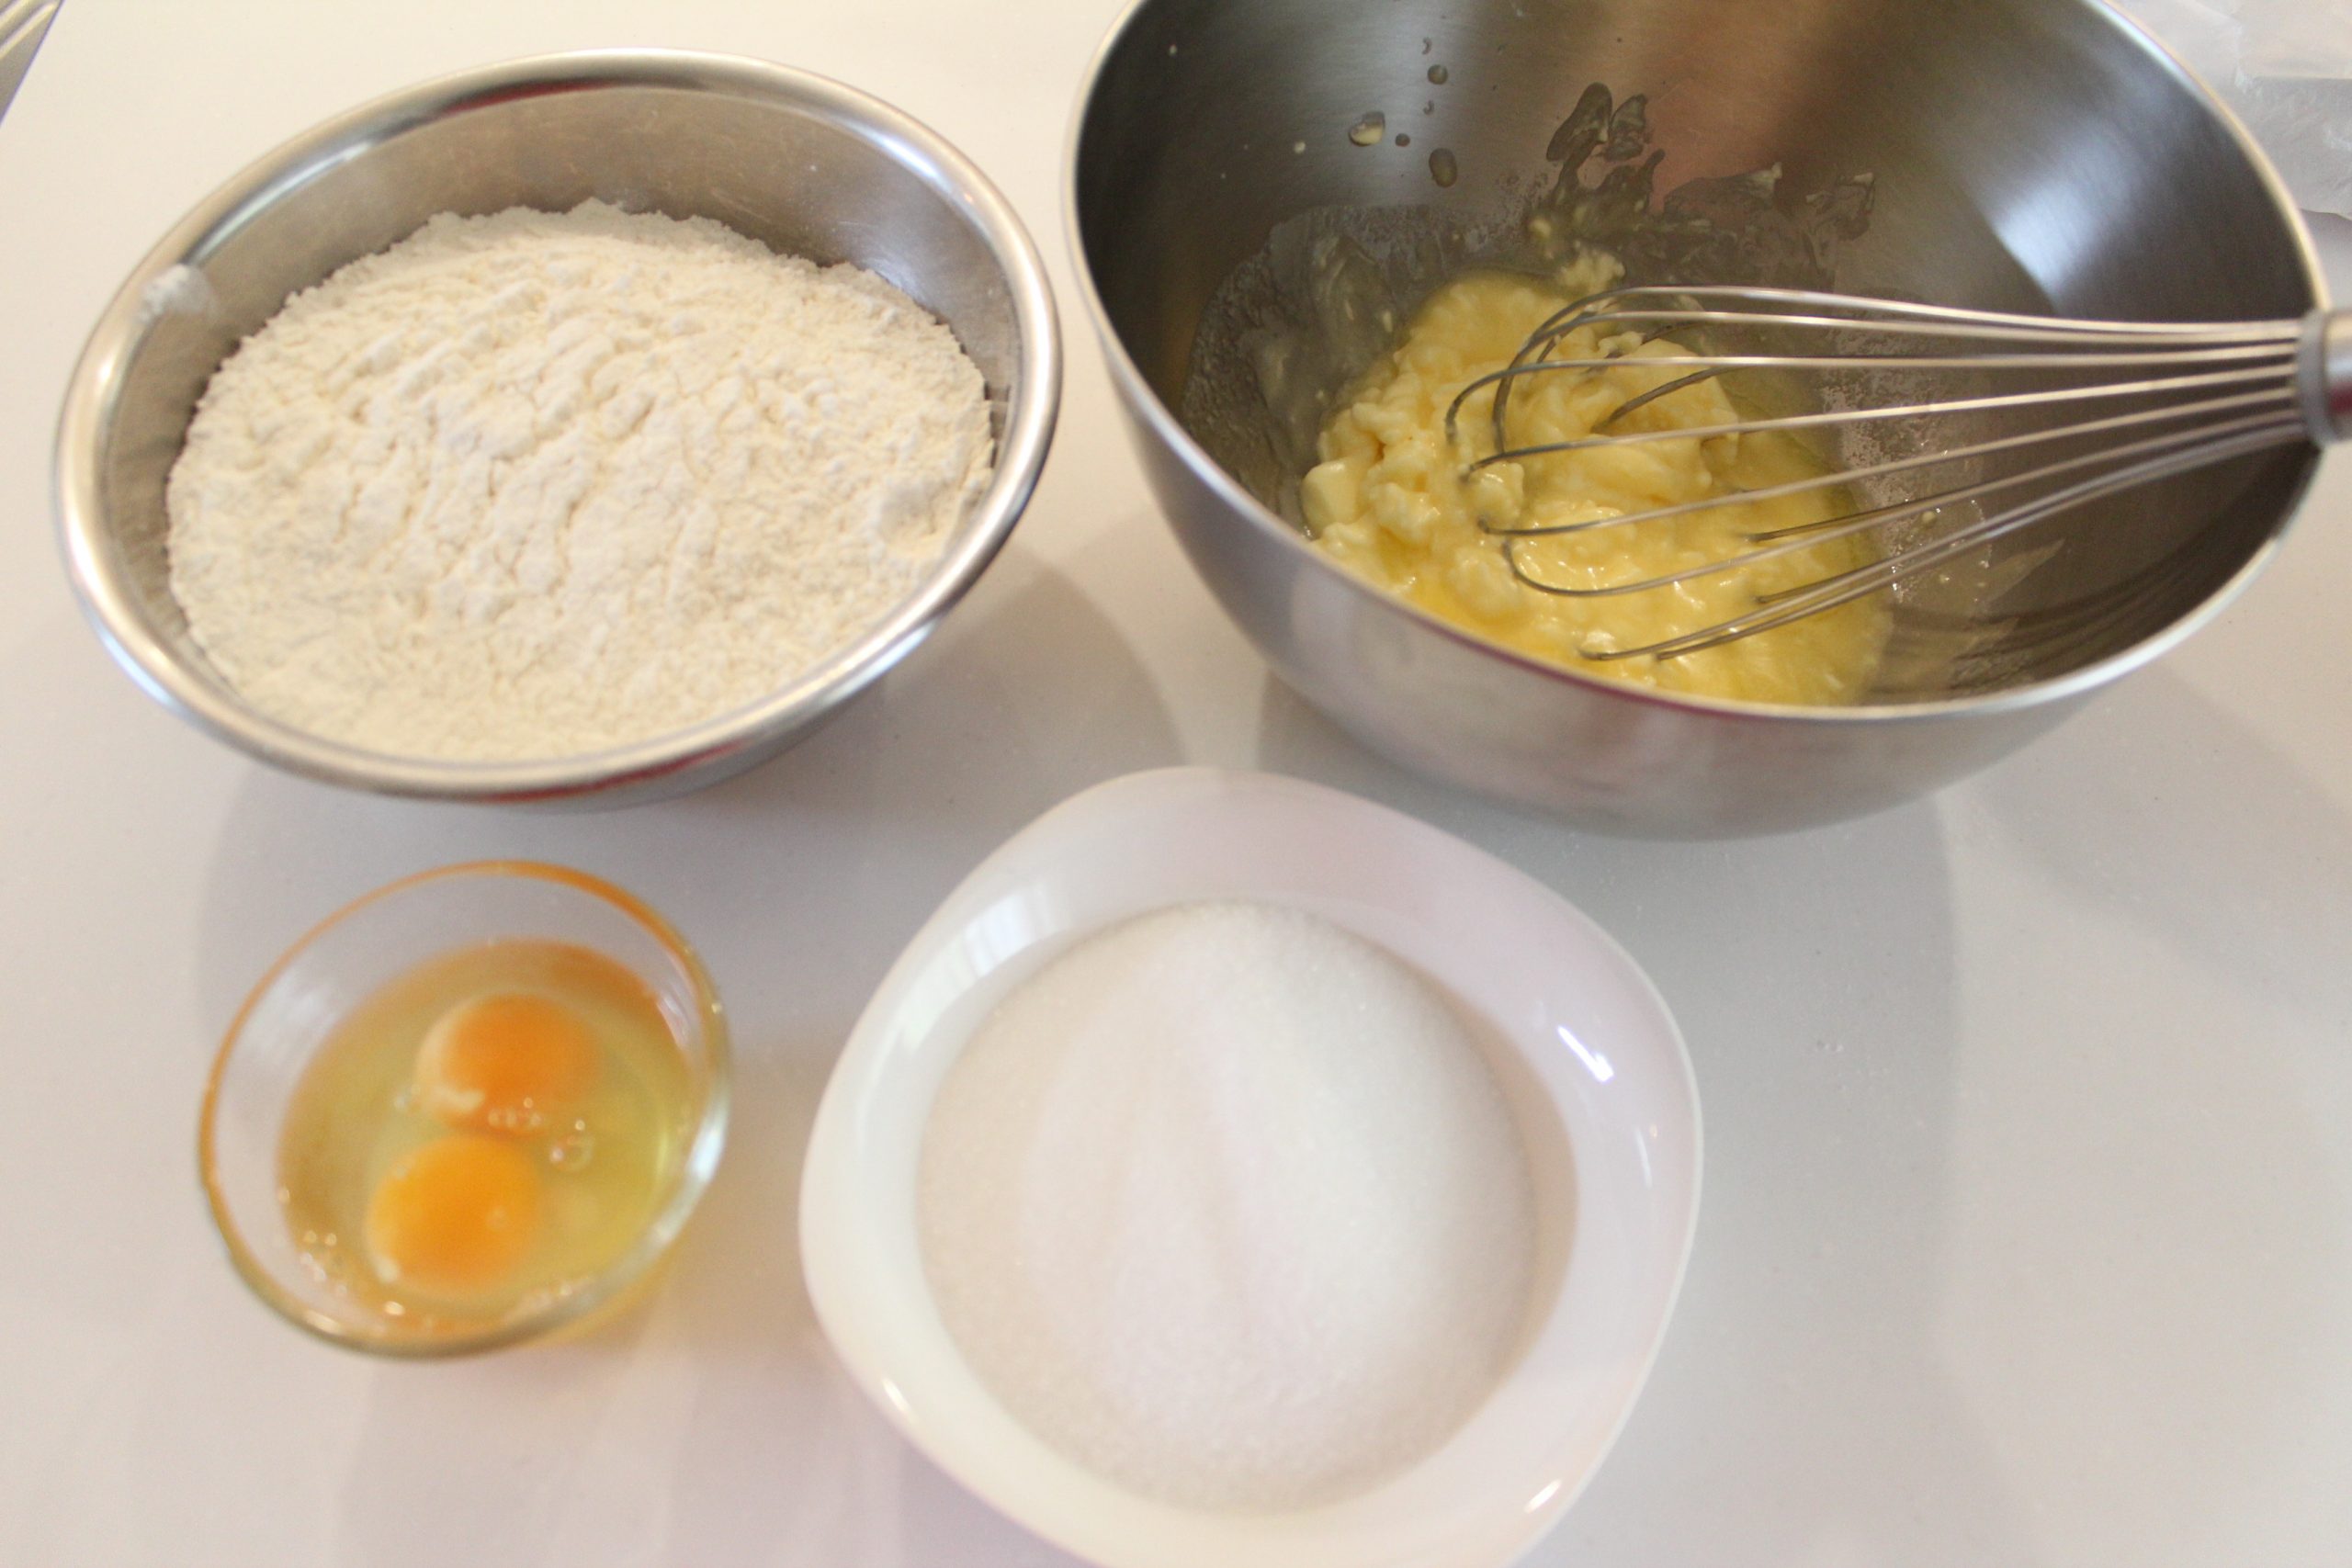 【下準備】
・バターとたまごは常温に戻して、たまごは溶いておく。
・粉はふるう。
※写真は倍量です